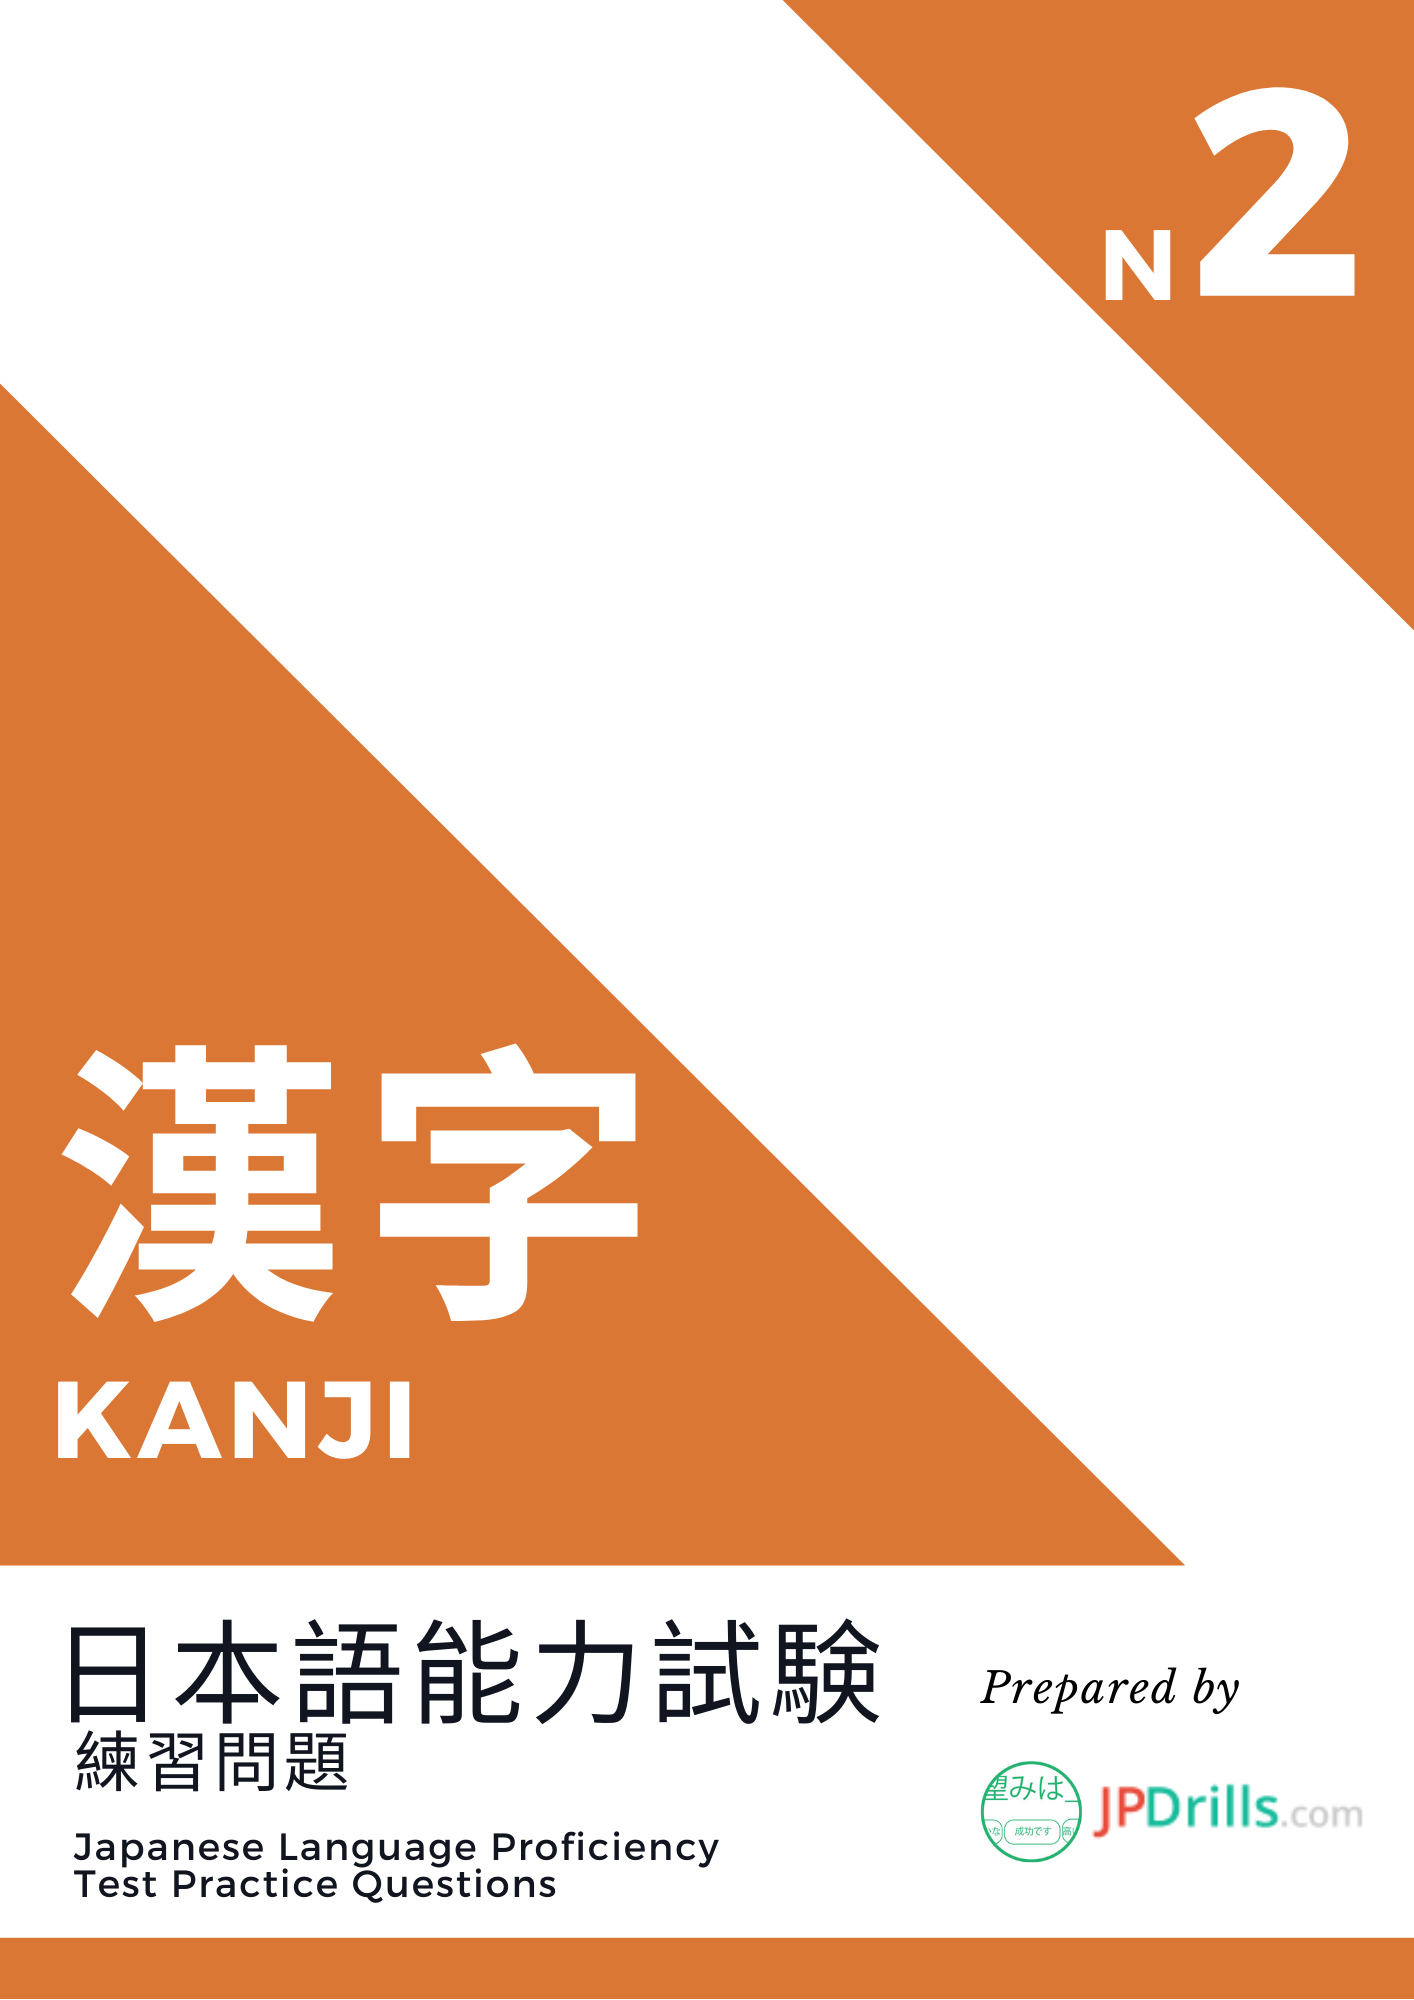 JLPT N2 Kanji quiz logo